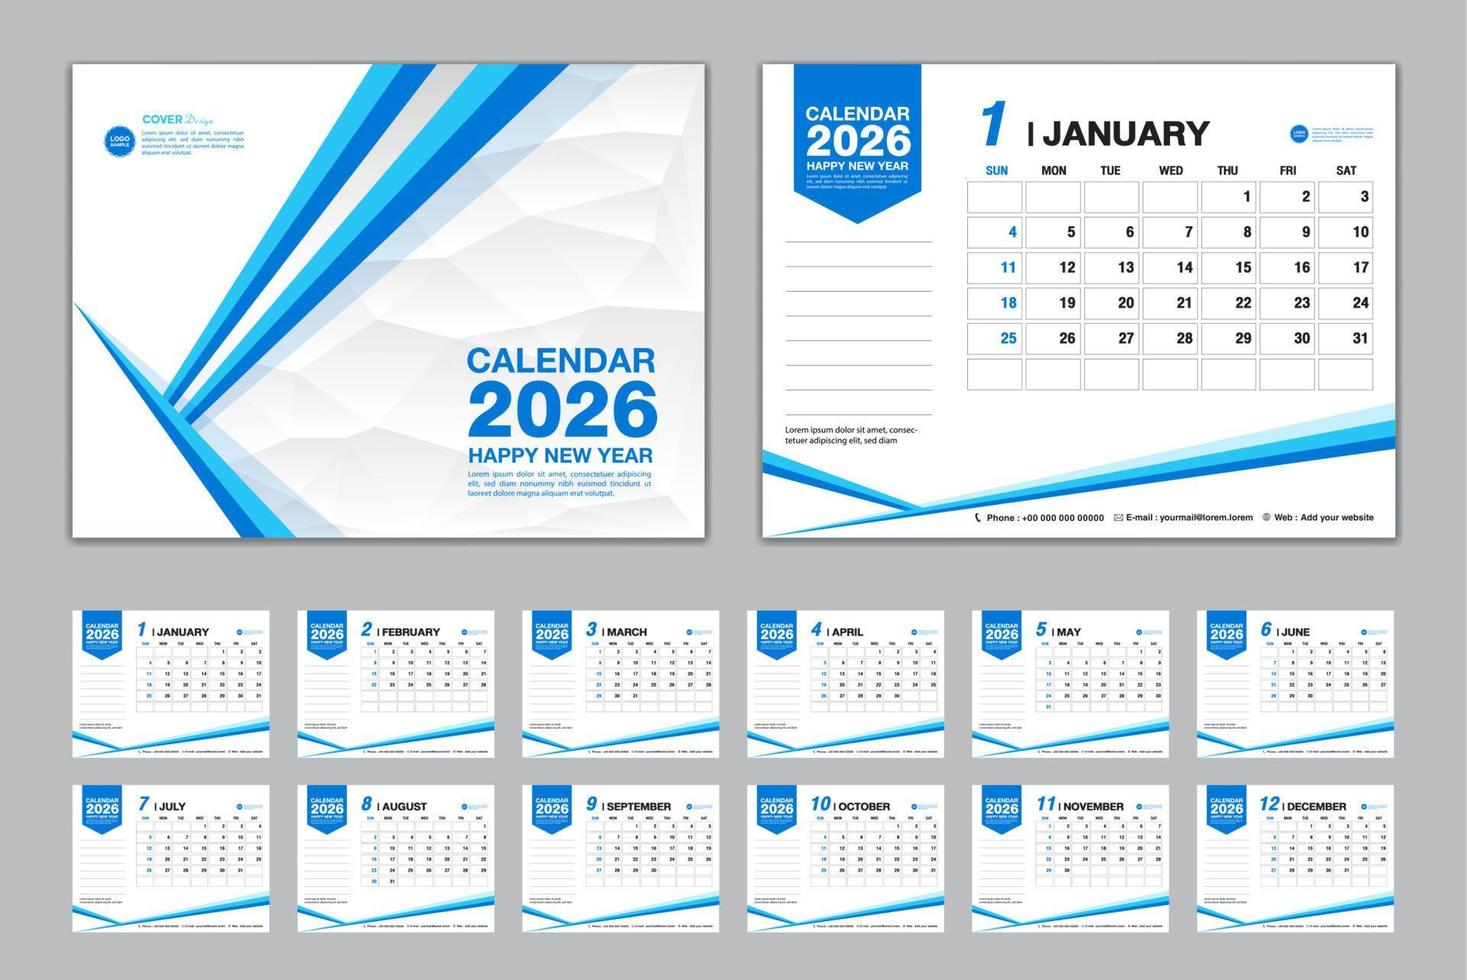 vector de conjunto de plantillas de calendario 2026, la semana comienza el domingo, conjunto de 12 meses, calendario de escritorio 2026 año, calendario de pared 2026, planificador, plantilla de negocios, papelería, medios de impresión, fondo de polígono azul